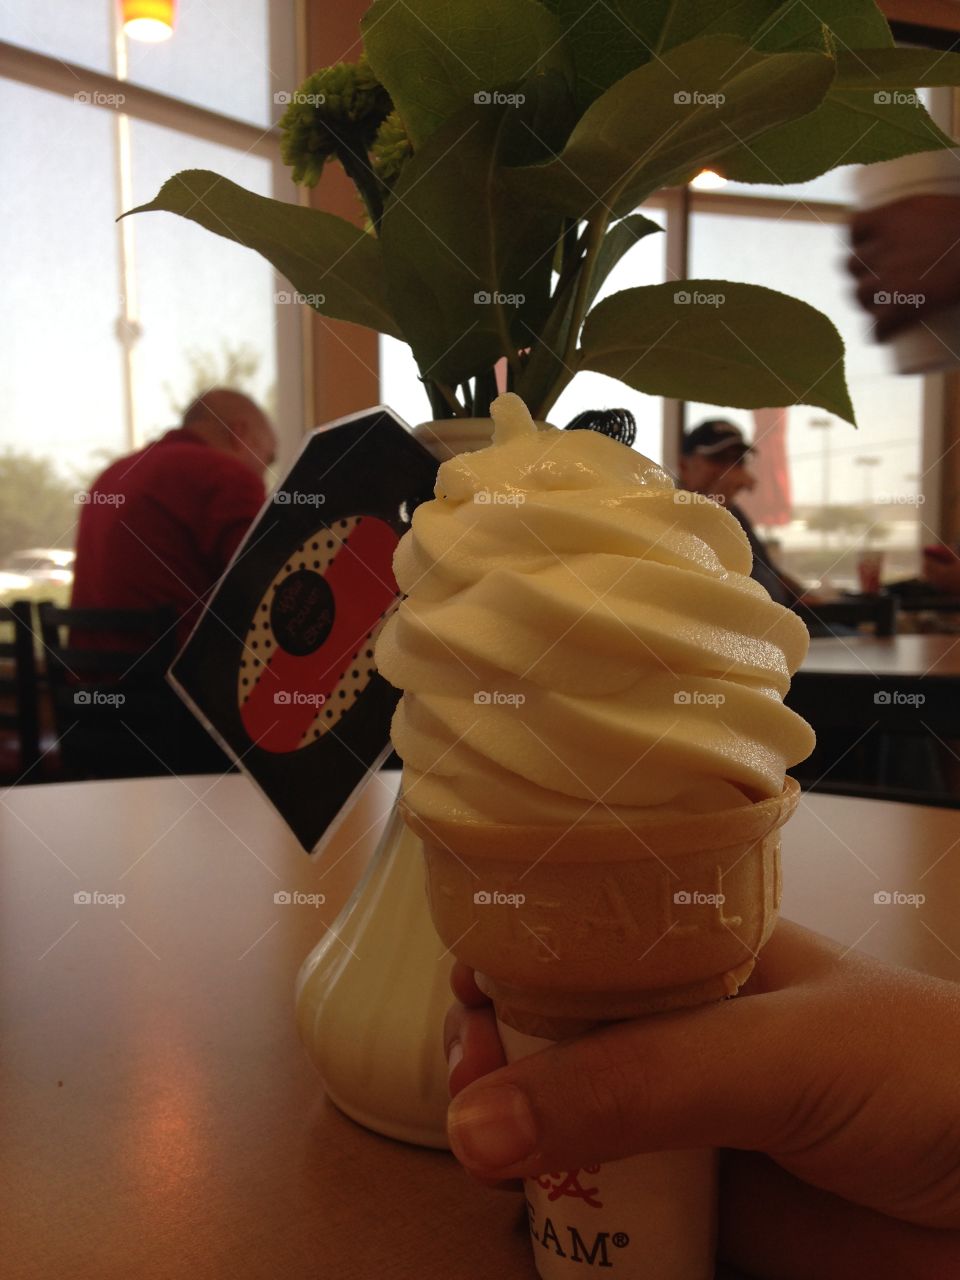 Dream cone. Chick-Fil-A soft serve ice cream cone
